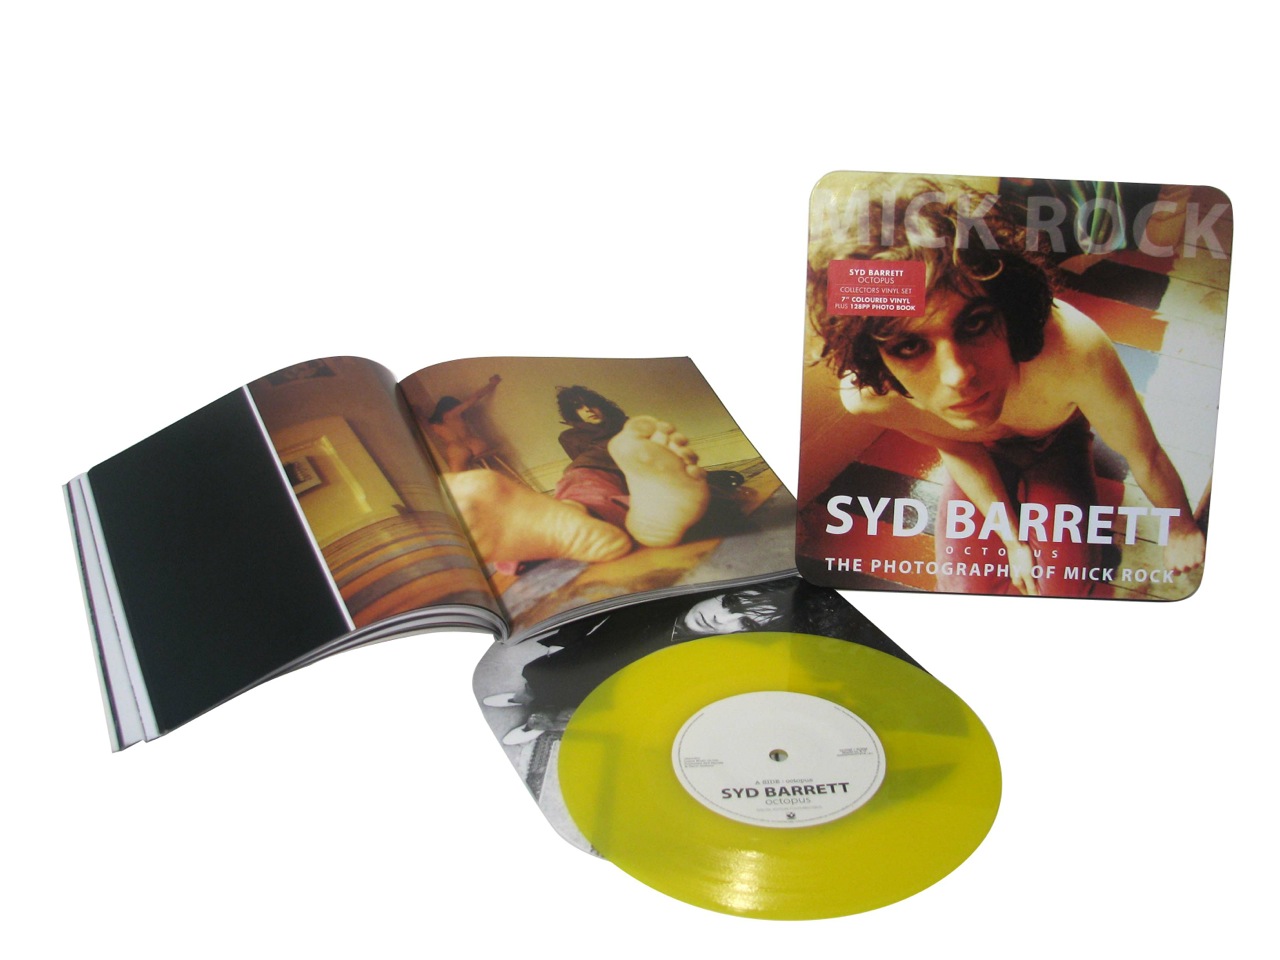 Syd Barrett/OCTOPUS 7"+ BOOK